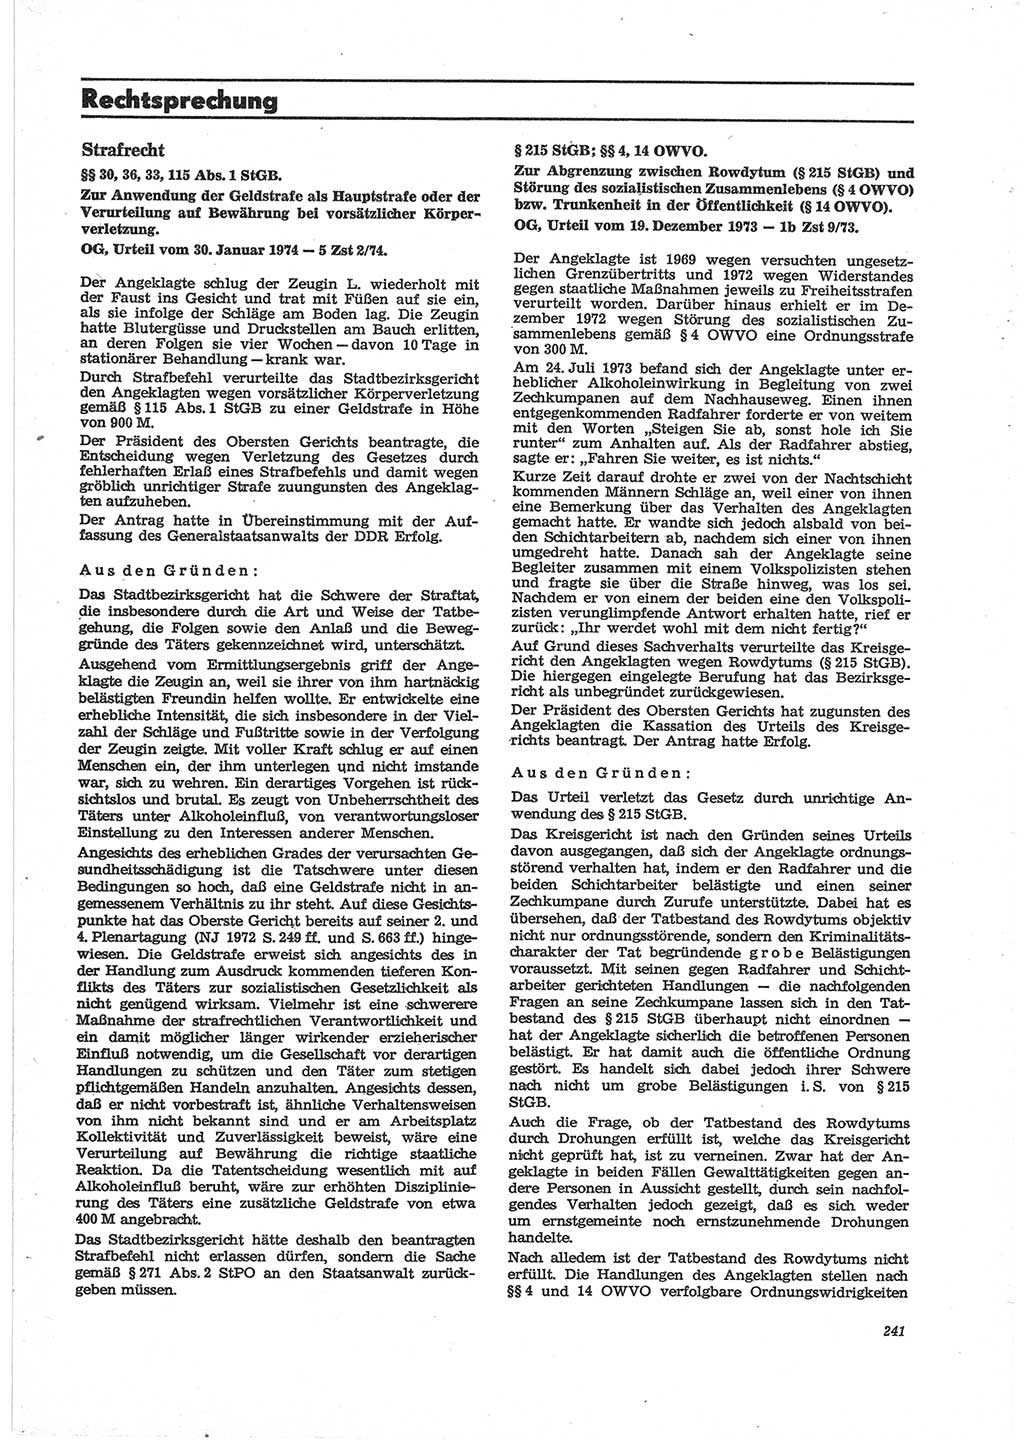 Neue Justiz (NJ), Zeitschrift für Recht und Rechtswissenschaft [Deutsche Demokratische Republik (DDR)], 28. Jahrgang 1974, Seite 241 (NJ DDR 1974, S. 241)